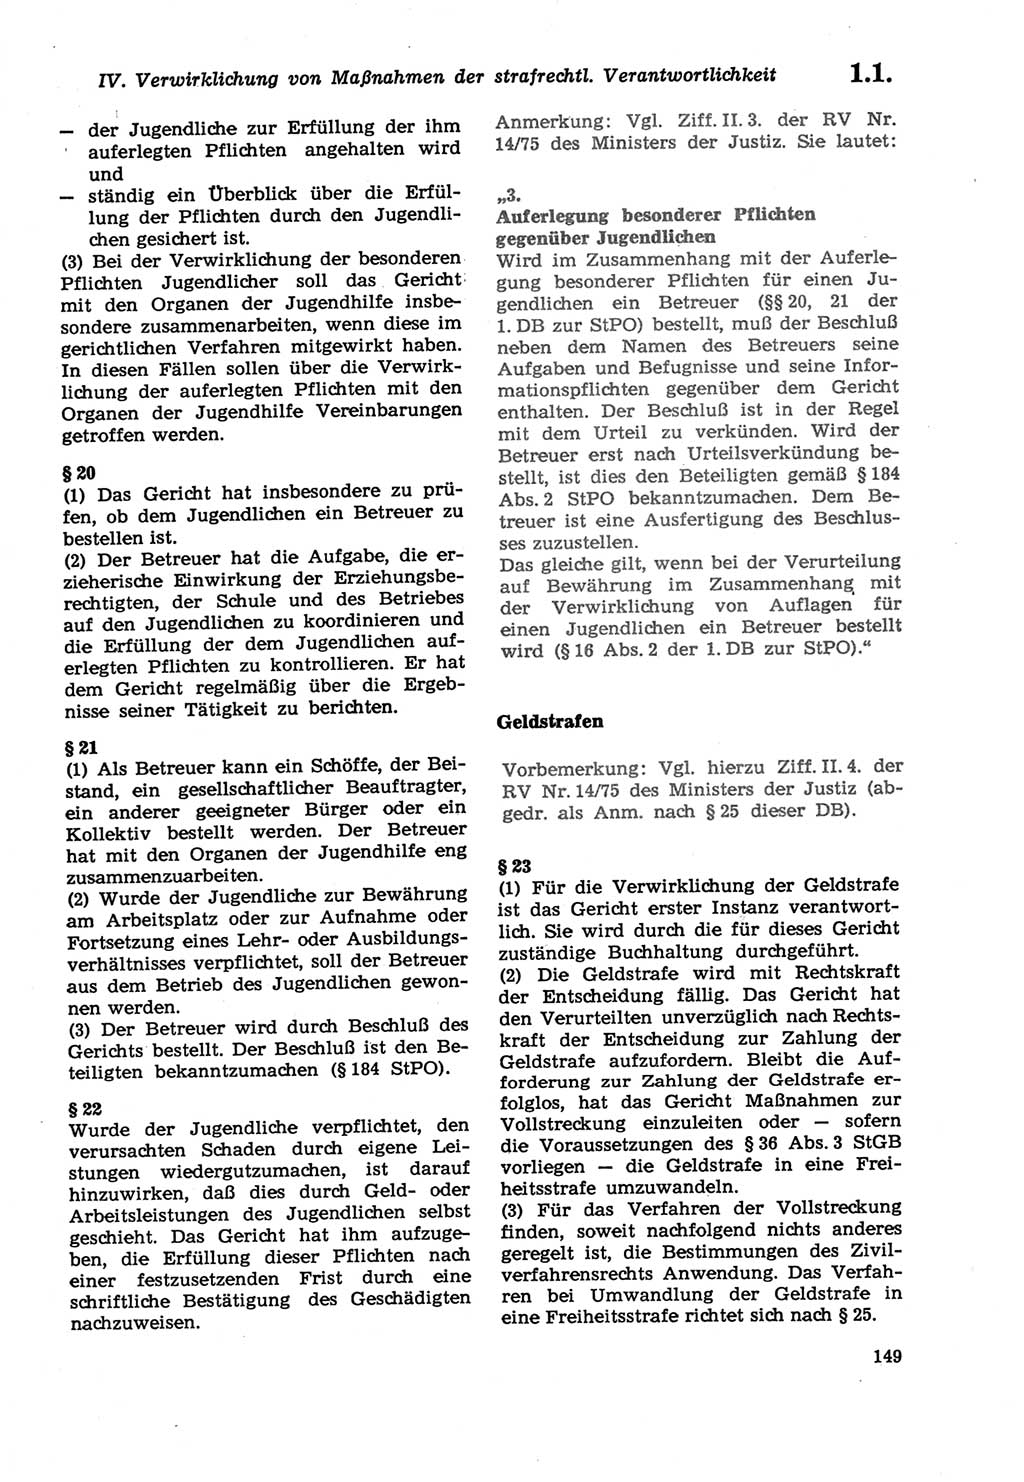 Strafprozeßordnung (StPO) der Deutschen Demokratischen Republik (DDR) sowie angrenzende Gesetze und Bestimmungen 1979, Seite 149 (StPO DDR Ges. Best. 1979, S. 149)